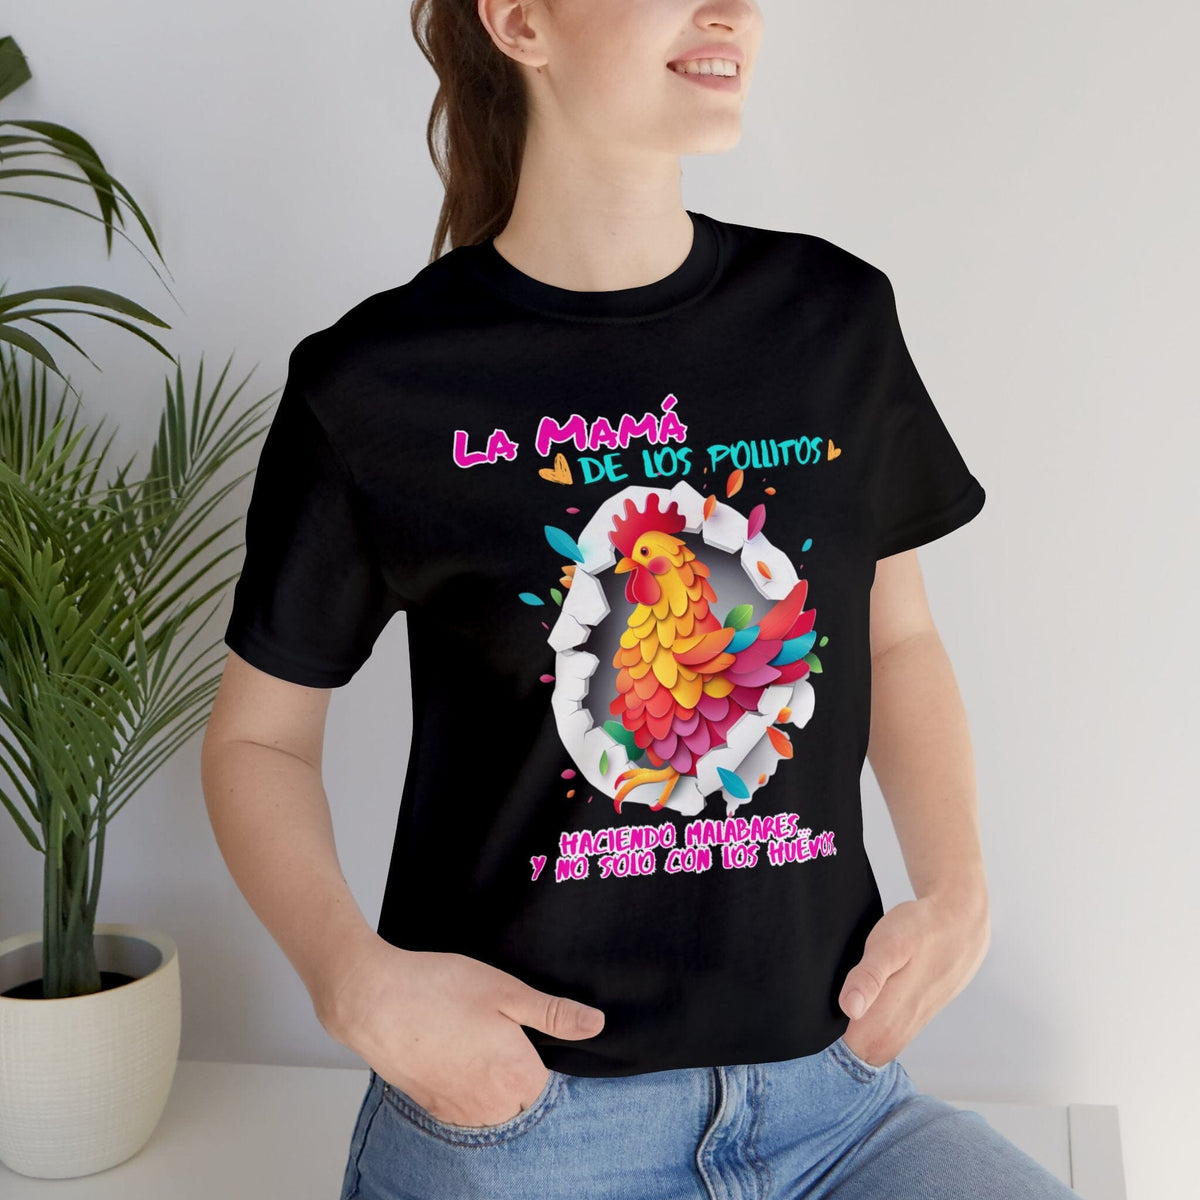 Exclusiva Camiseta 'La Mamá de los Pollitos' - Celebra el Orgullo de Ser Mamá con Estilo T-Shirt Printify Black S 